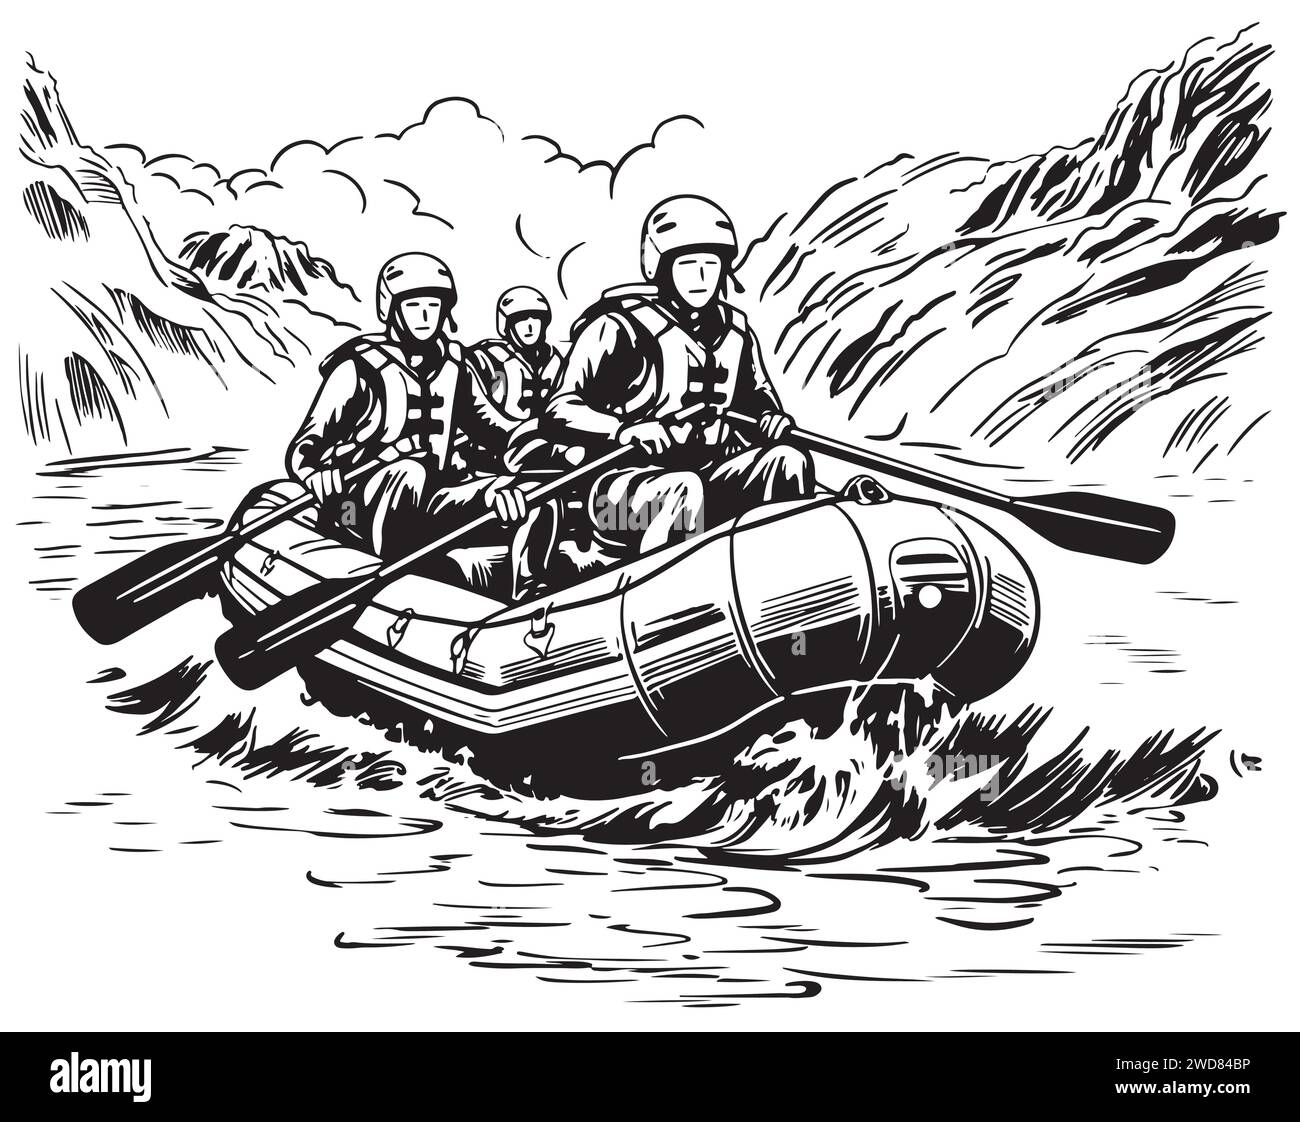 Croquis à la main de personnes sur un raft rafting sport Illustration de Vecteur